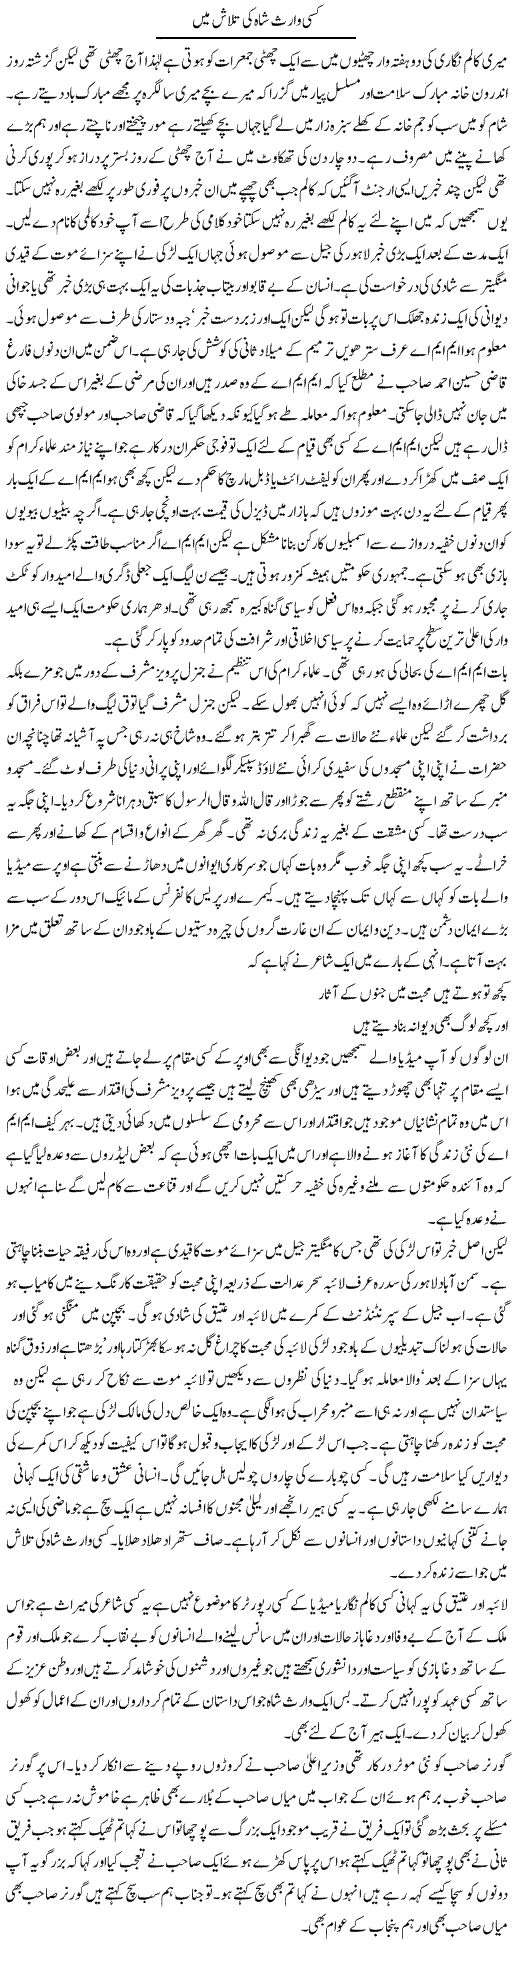 Waris Shah ki talash Express Column Abdul Qadir 15 May 2010